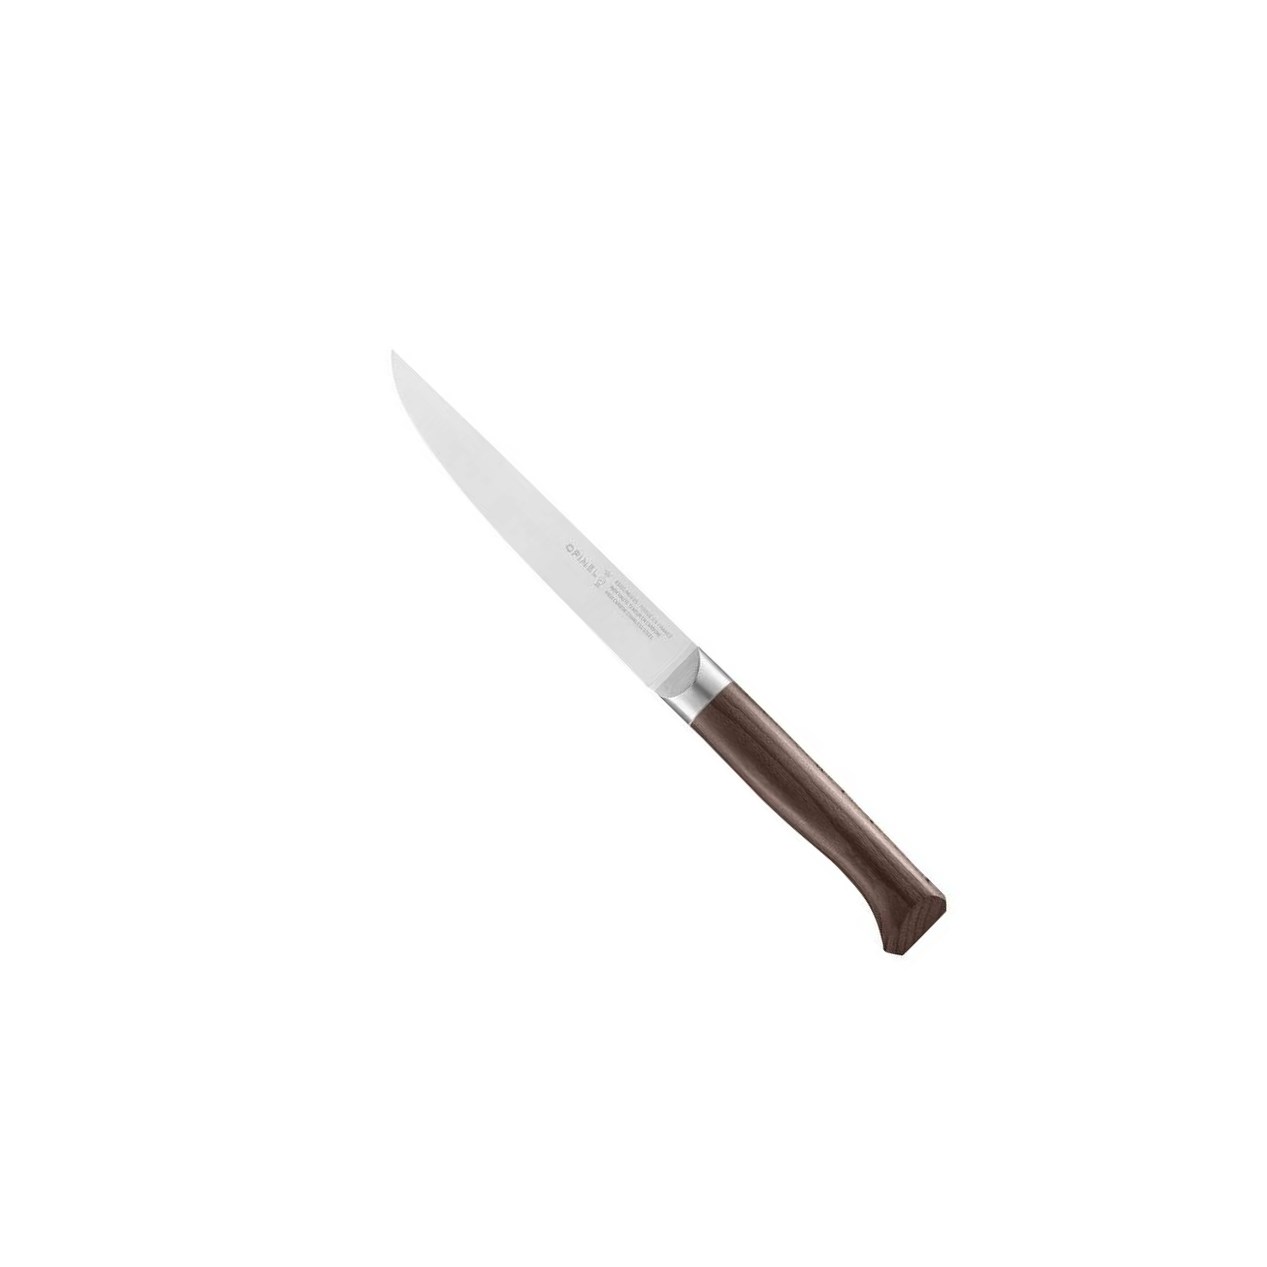 Porcovací nůž Les Forges 1890, 16 cm - Opinel